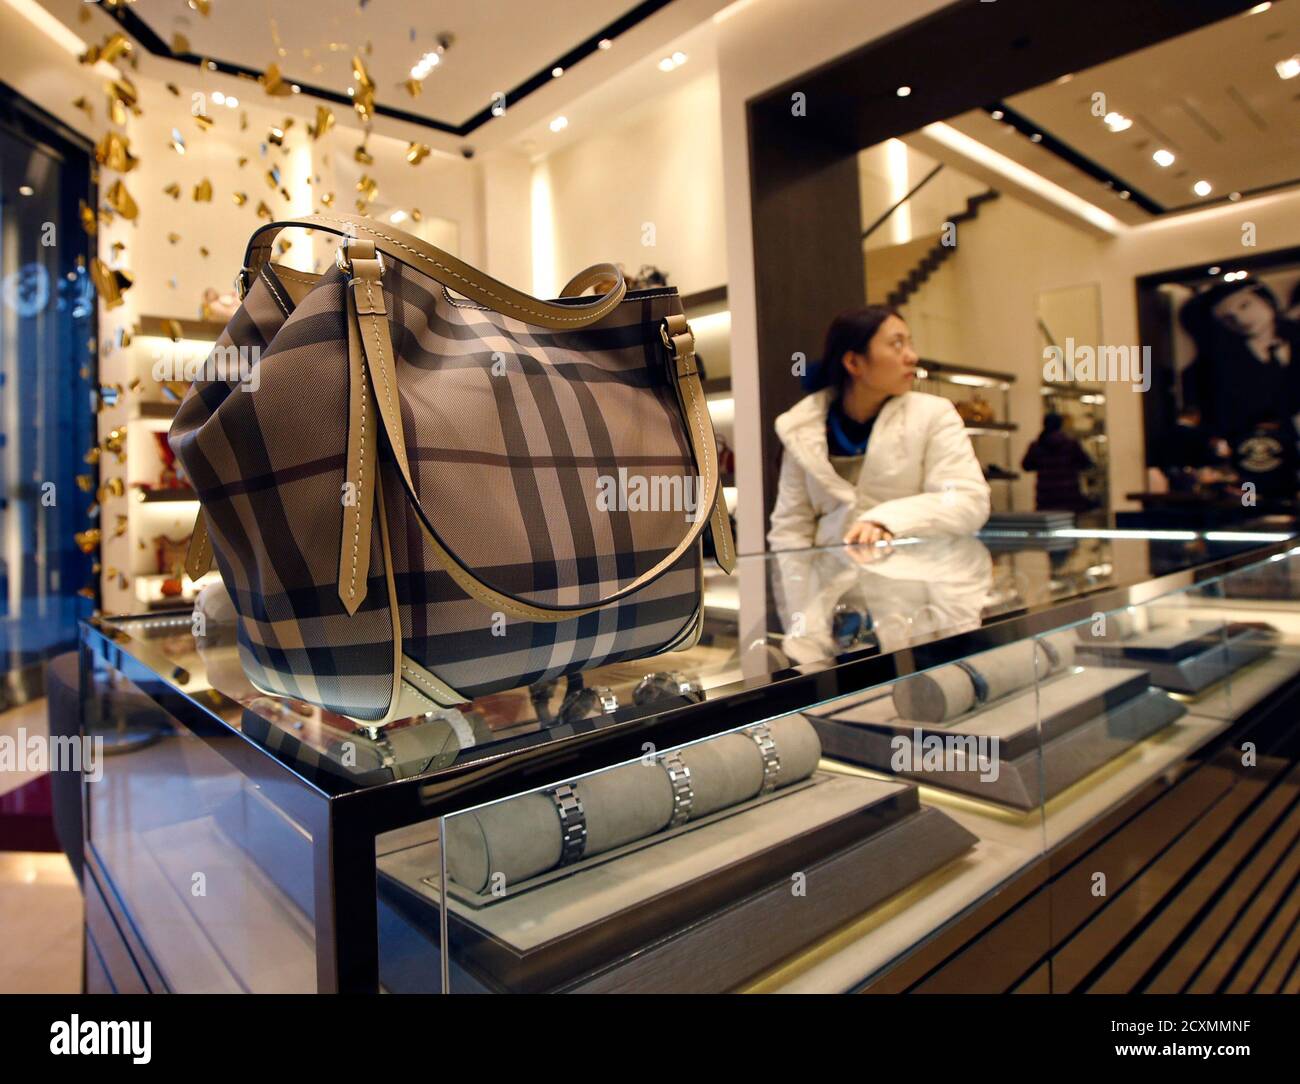 Un sac à main Burberry est vu sur des vitrines en verre dans un magasin  Burberry à Beijing le 29 novembre 2013. Burberry Group PLC a fait appel  d'une décision des autorités